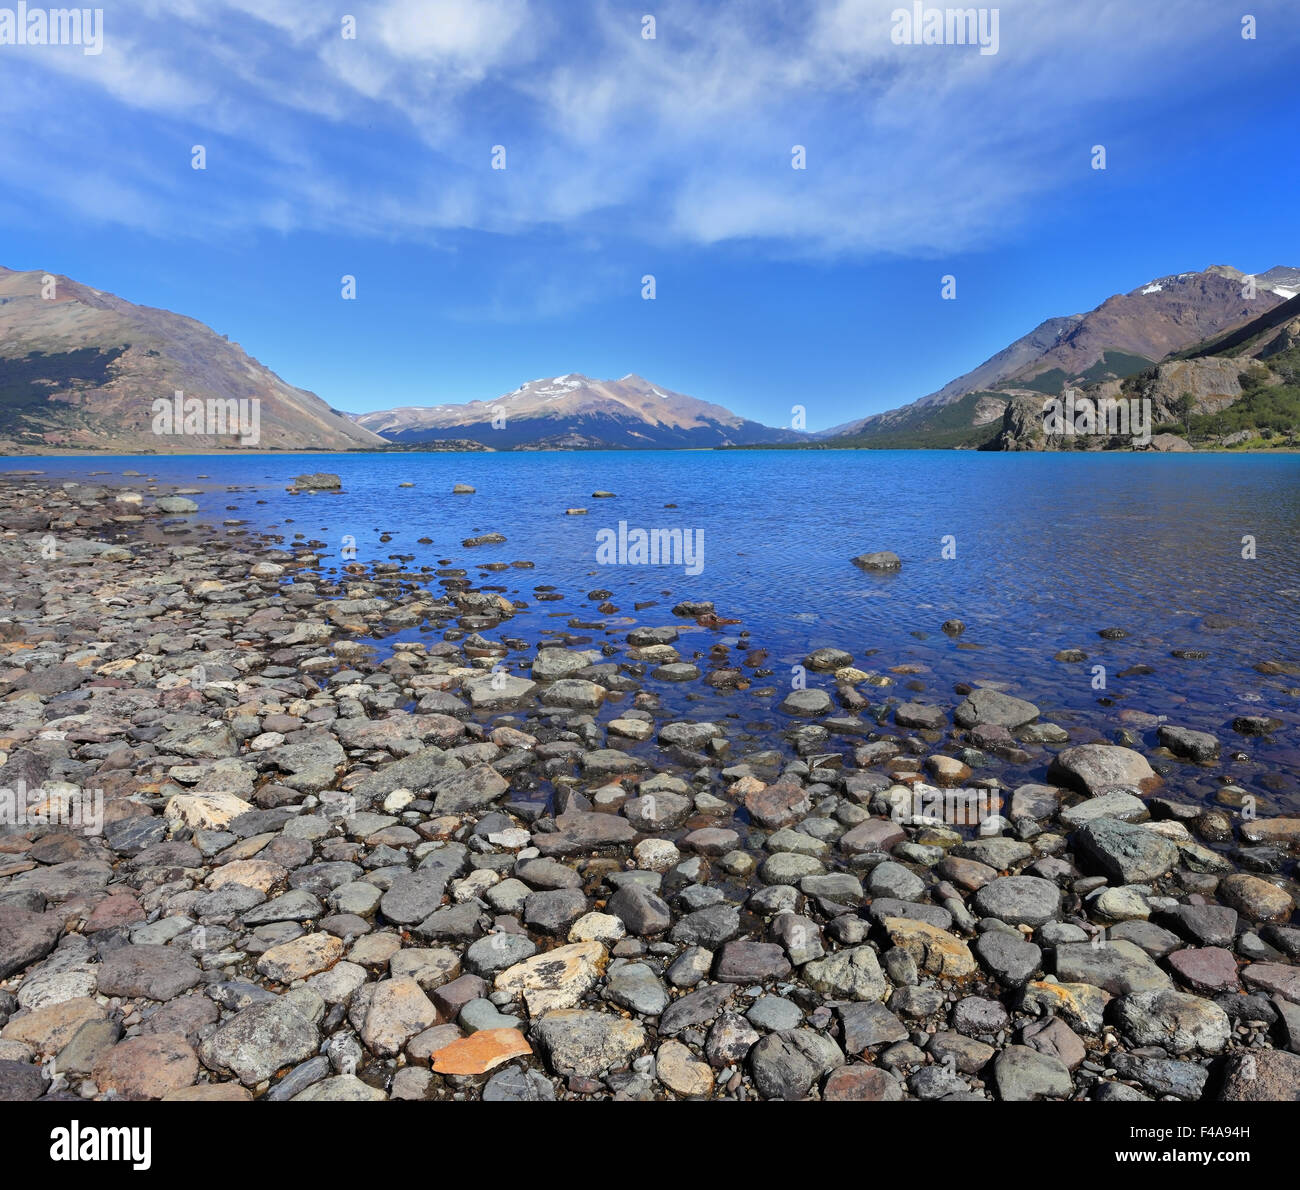 Lago blu con una spiaggia rocciosa Foto Stock